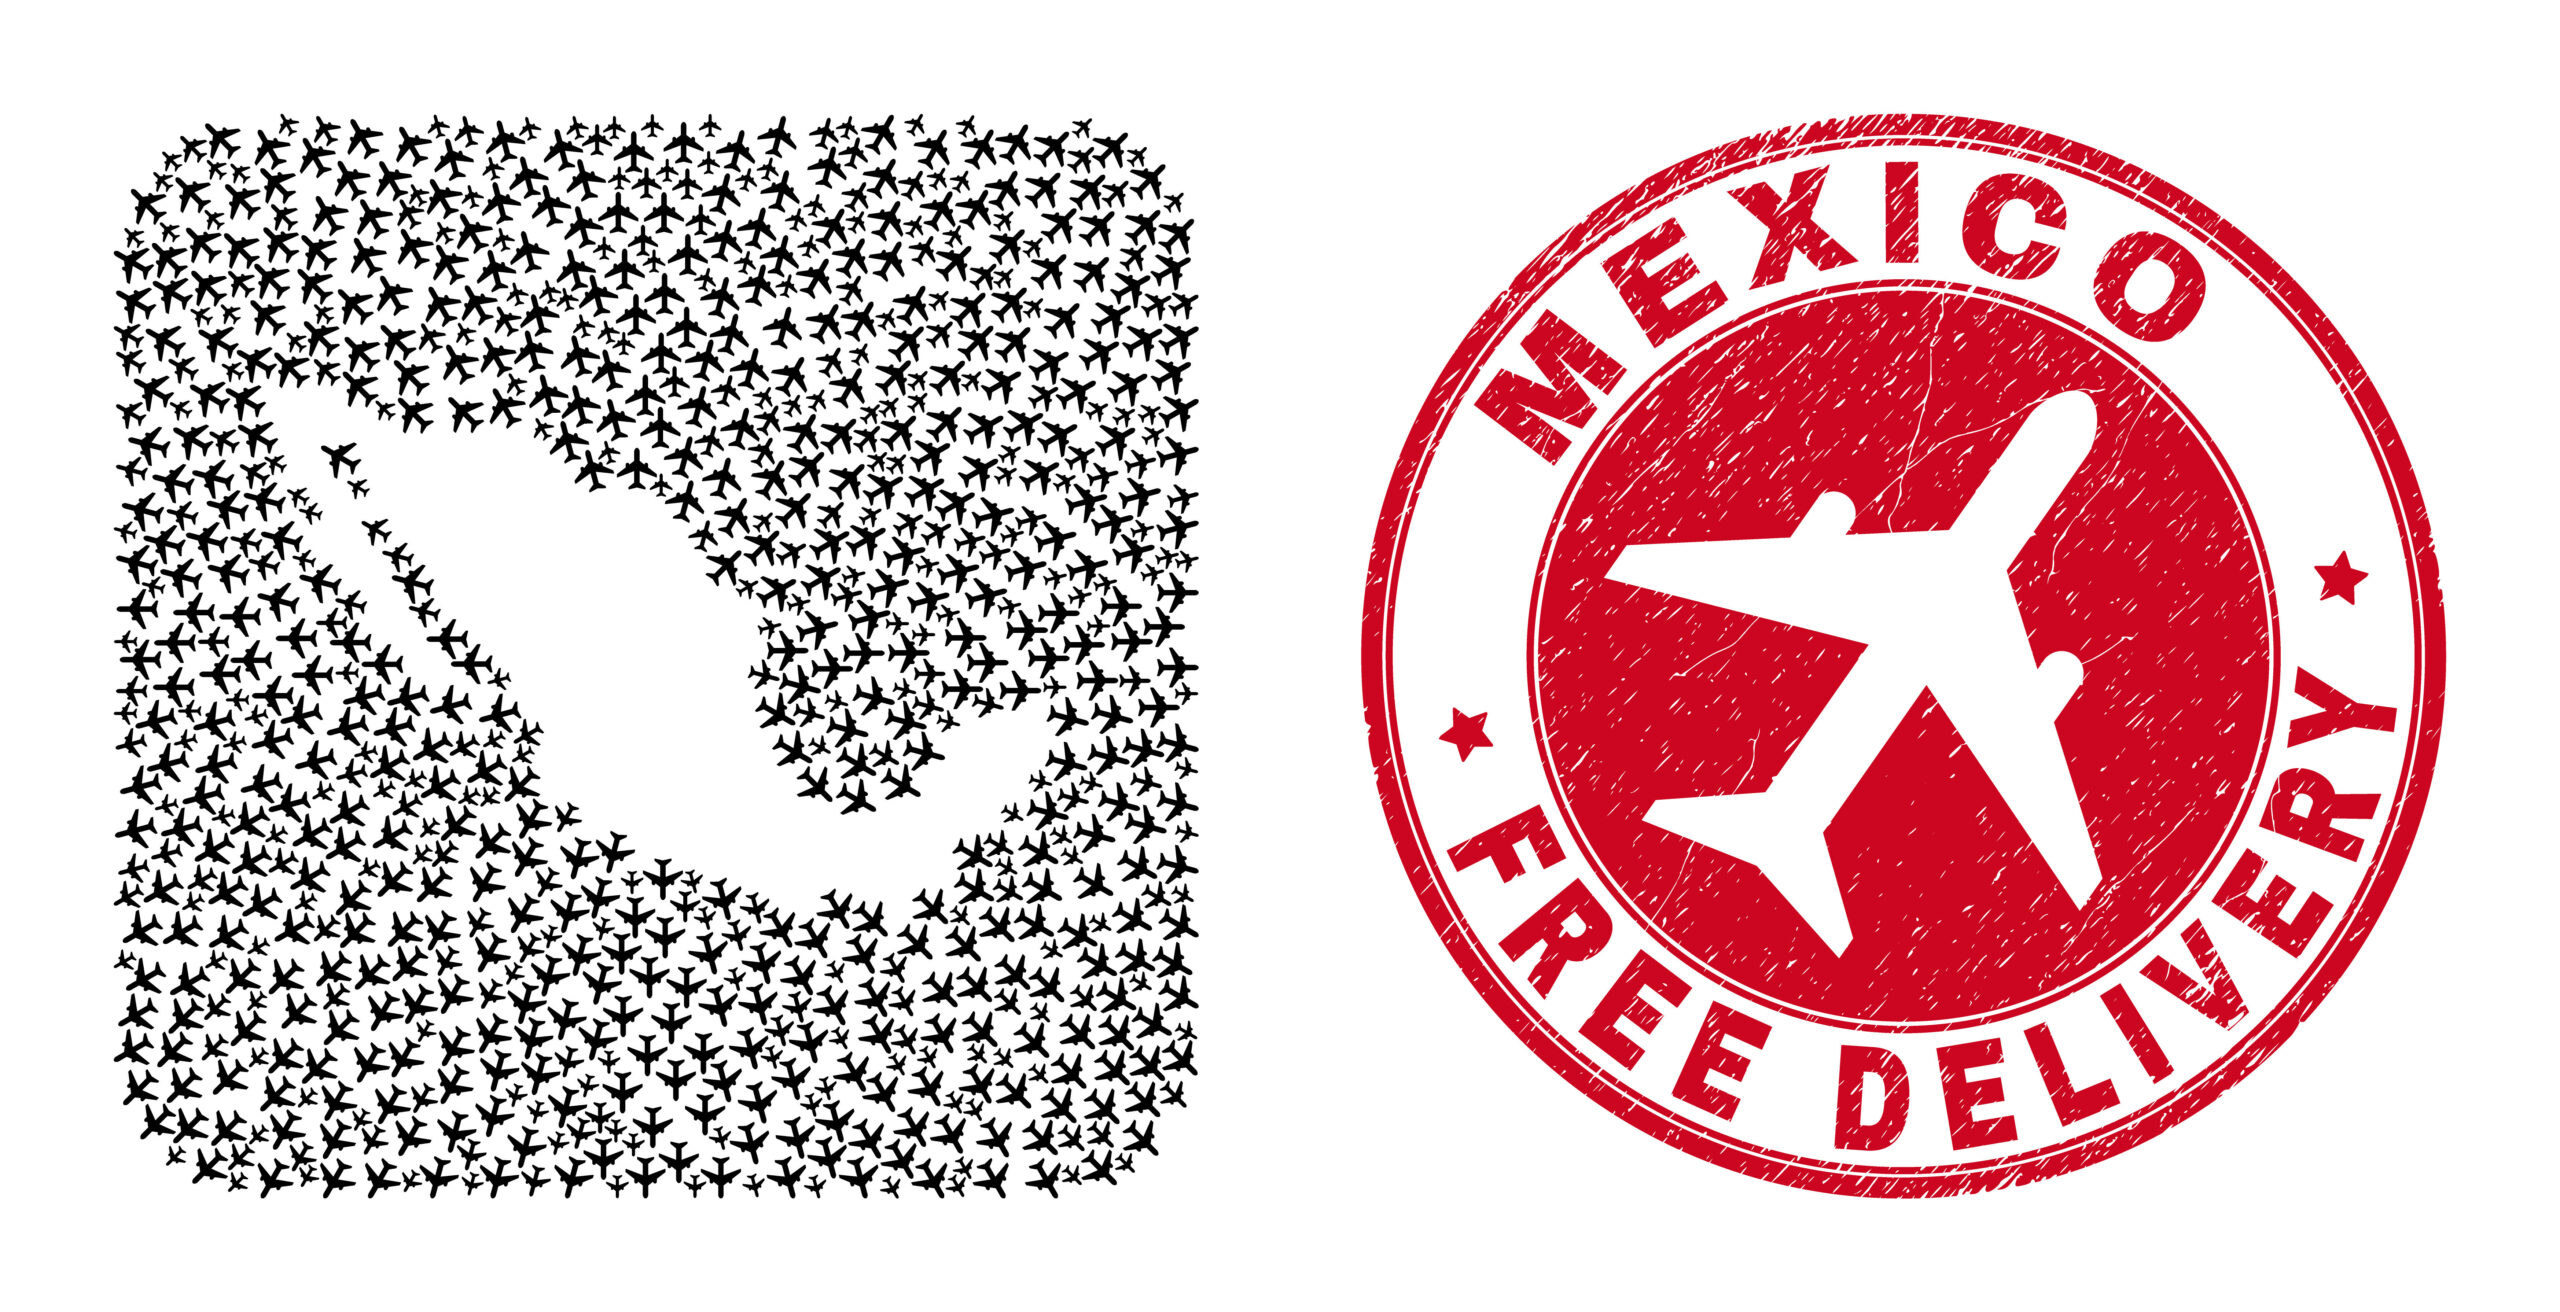 Contorno del territorio mexicano hecho a base de aviones a un lado de una marca de sello rojo que se refiere al libre tránsito del espacio aereo mexicano